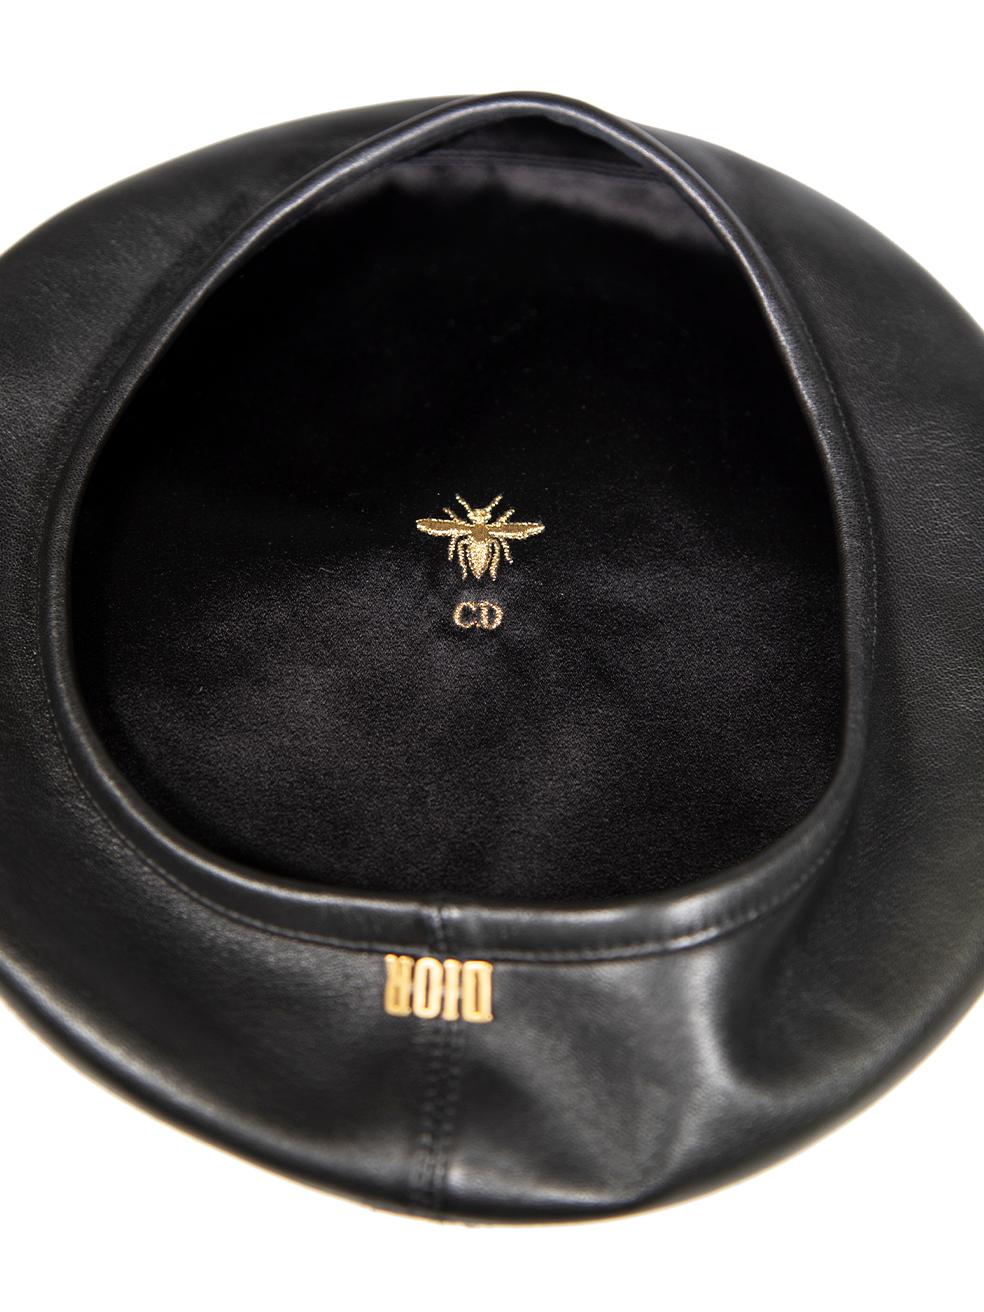 CONDIT ist sehr gut. Kaum sichtbare Abnutzungserscheinungen am Hut sind bei diesem gebrauchten Dior-Designer-Wiederverkaufsartikel zu erkennen.
 
 
 
 Einzelheiten
 
 
 D-Dream
 
 Schwarz
 
 Leder
 
 Baskenmütze
 
 Schnalle mit Logo-Detail
 
